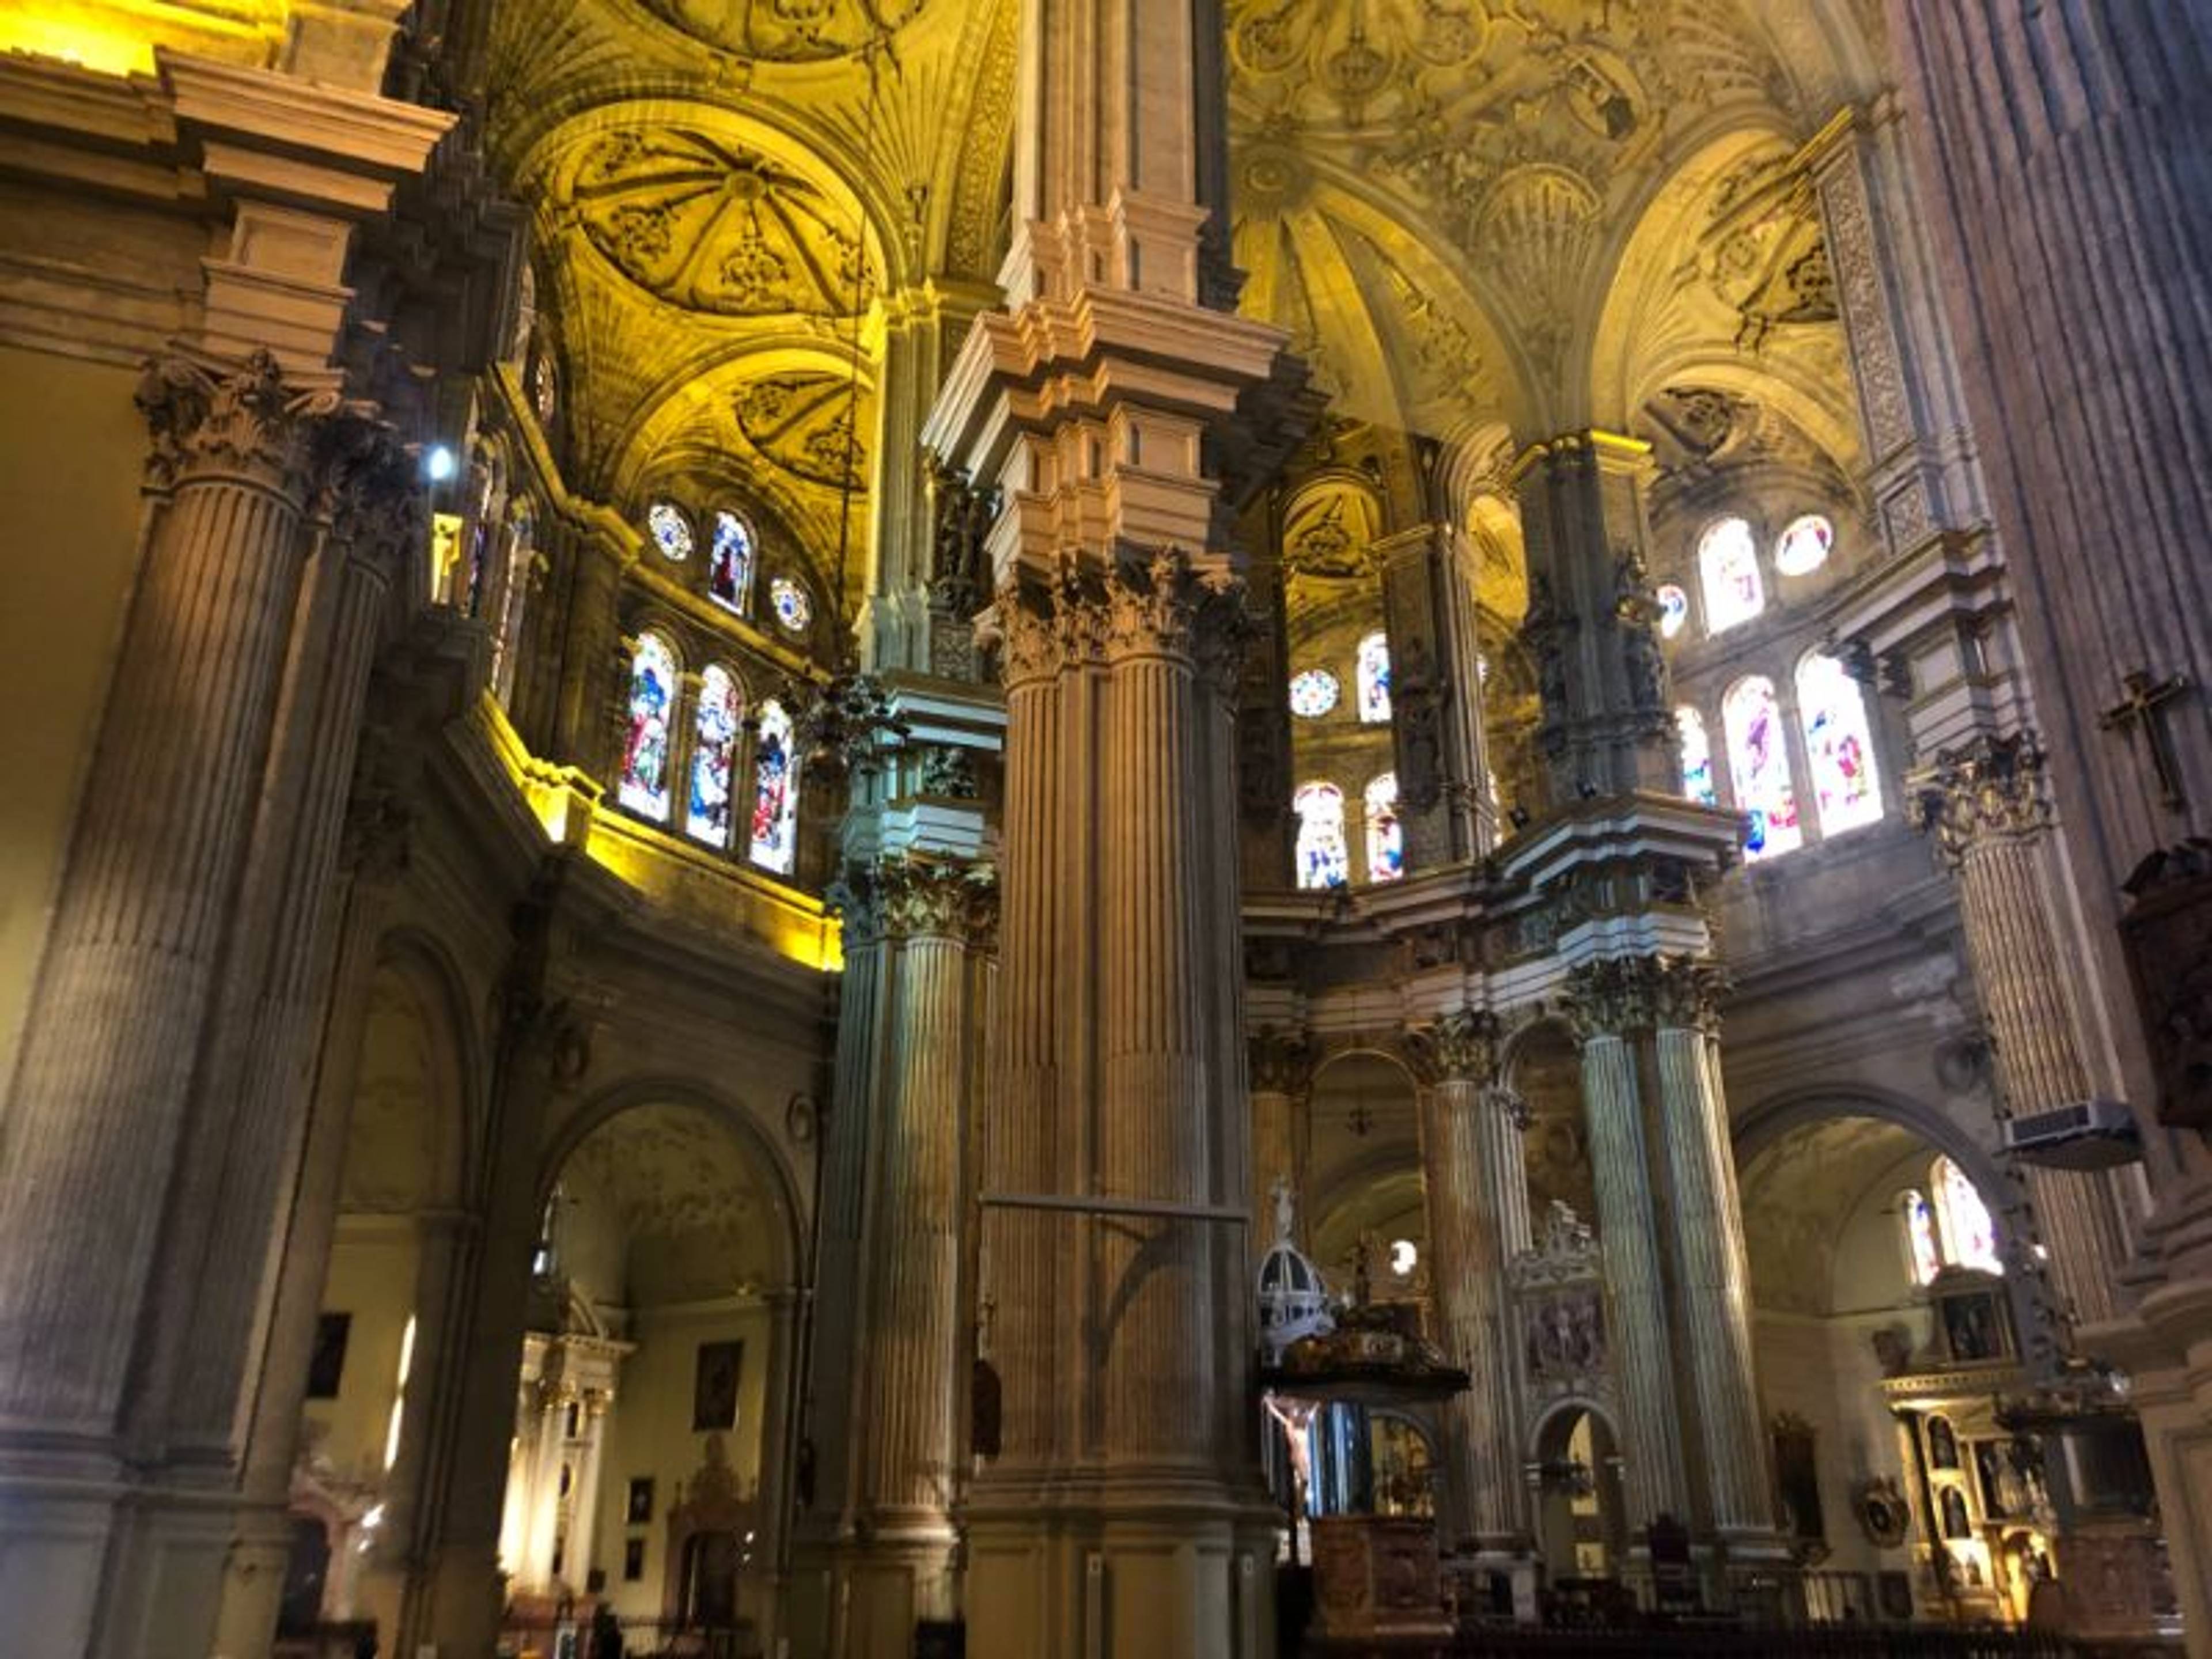 Strzeliste wnętrze kościoła z wysokimi kolumnami i zdobionym sklepieniem